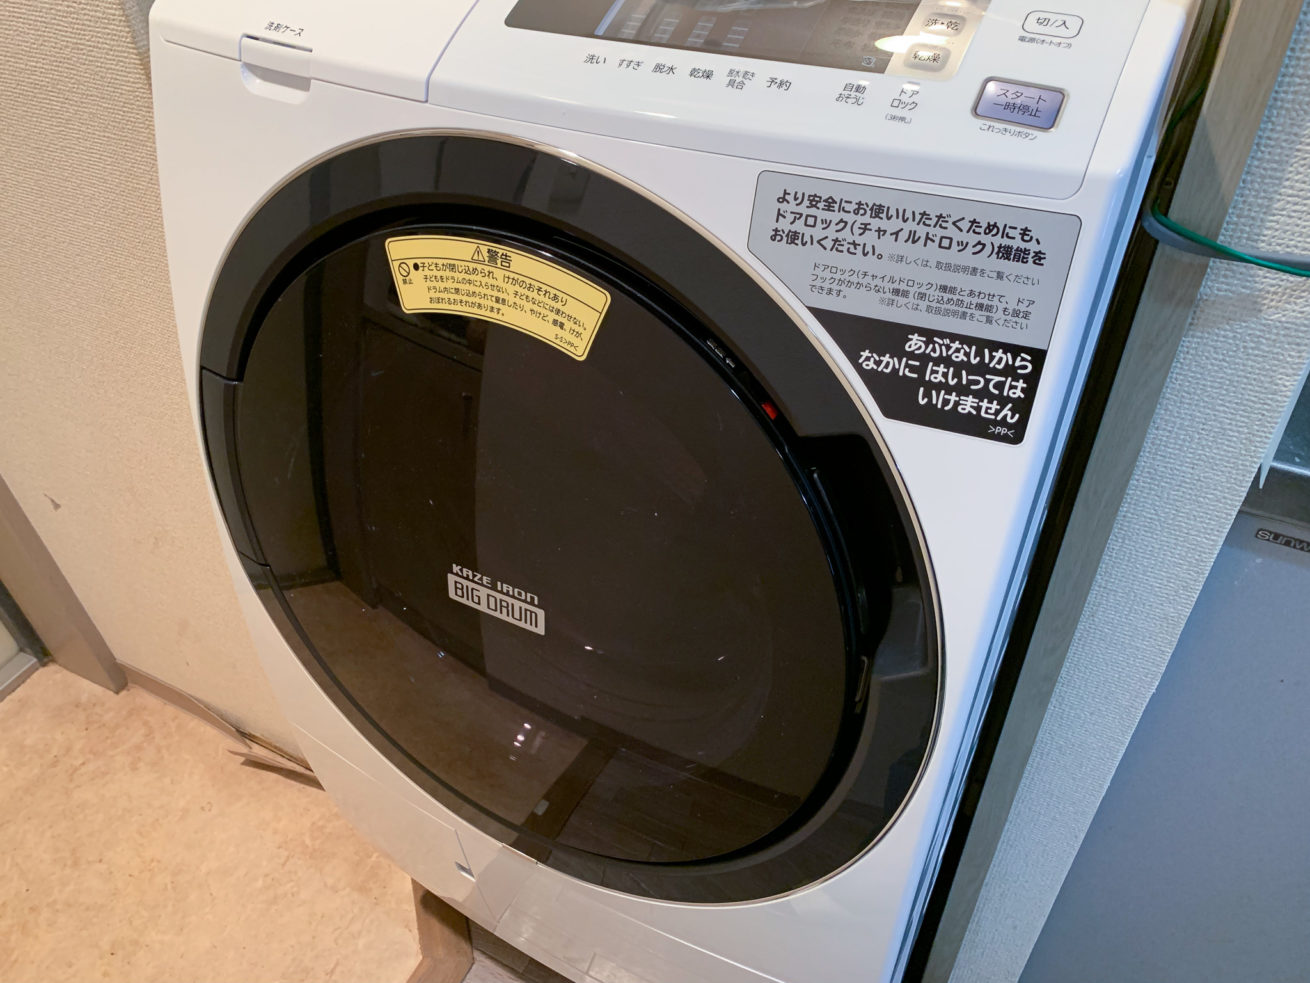 昇進 仕様 ディレクトリ 日立 洗濯 機 新 製品 2019 - c-aile.jp